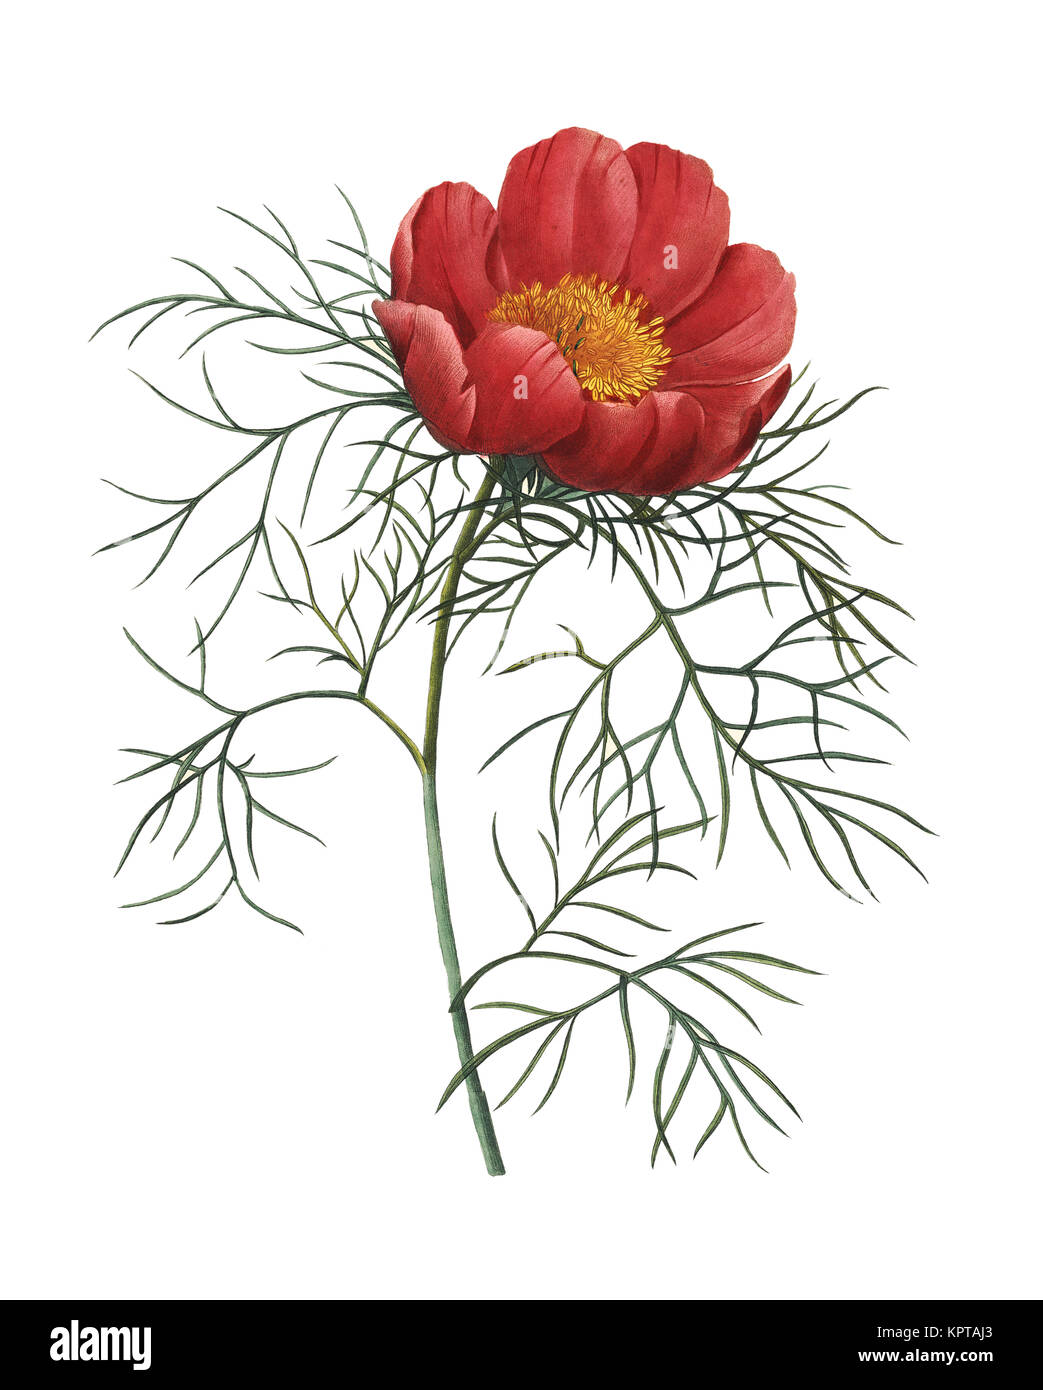 19ème siècle Illustration d'une Paeonia tenuifolia également connu sous le nom de feuille de fougère pivoine. Gravure par Pierre-Joseph Redoute. Publié dans Choix des plus belle Banque D'Images